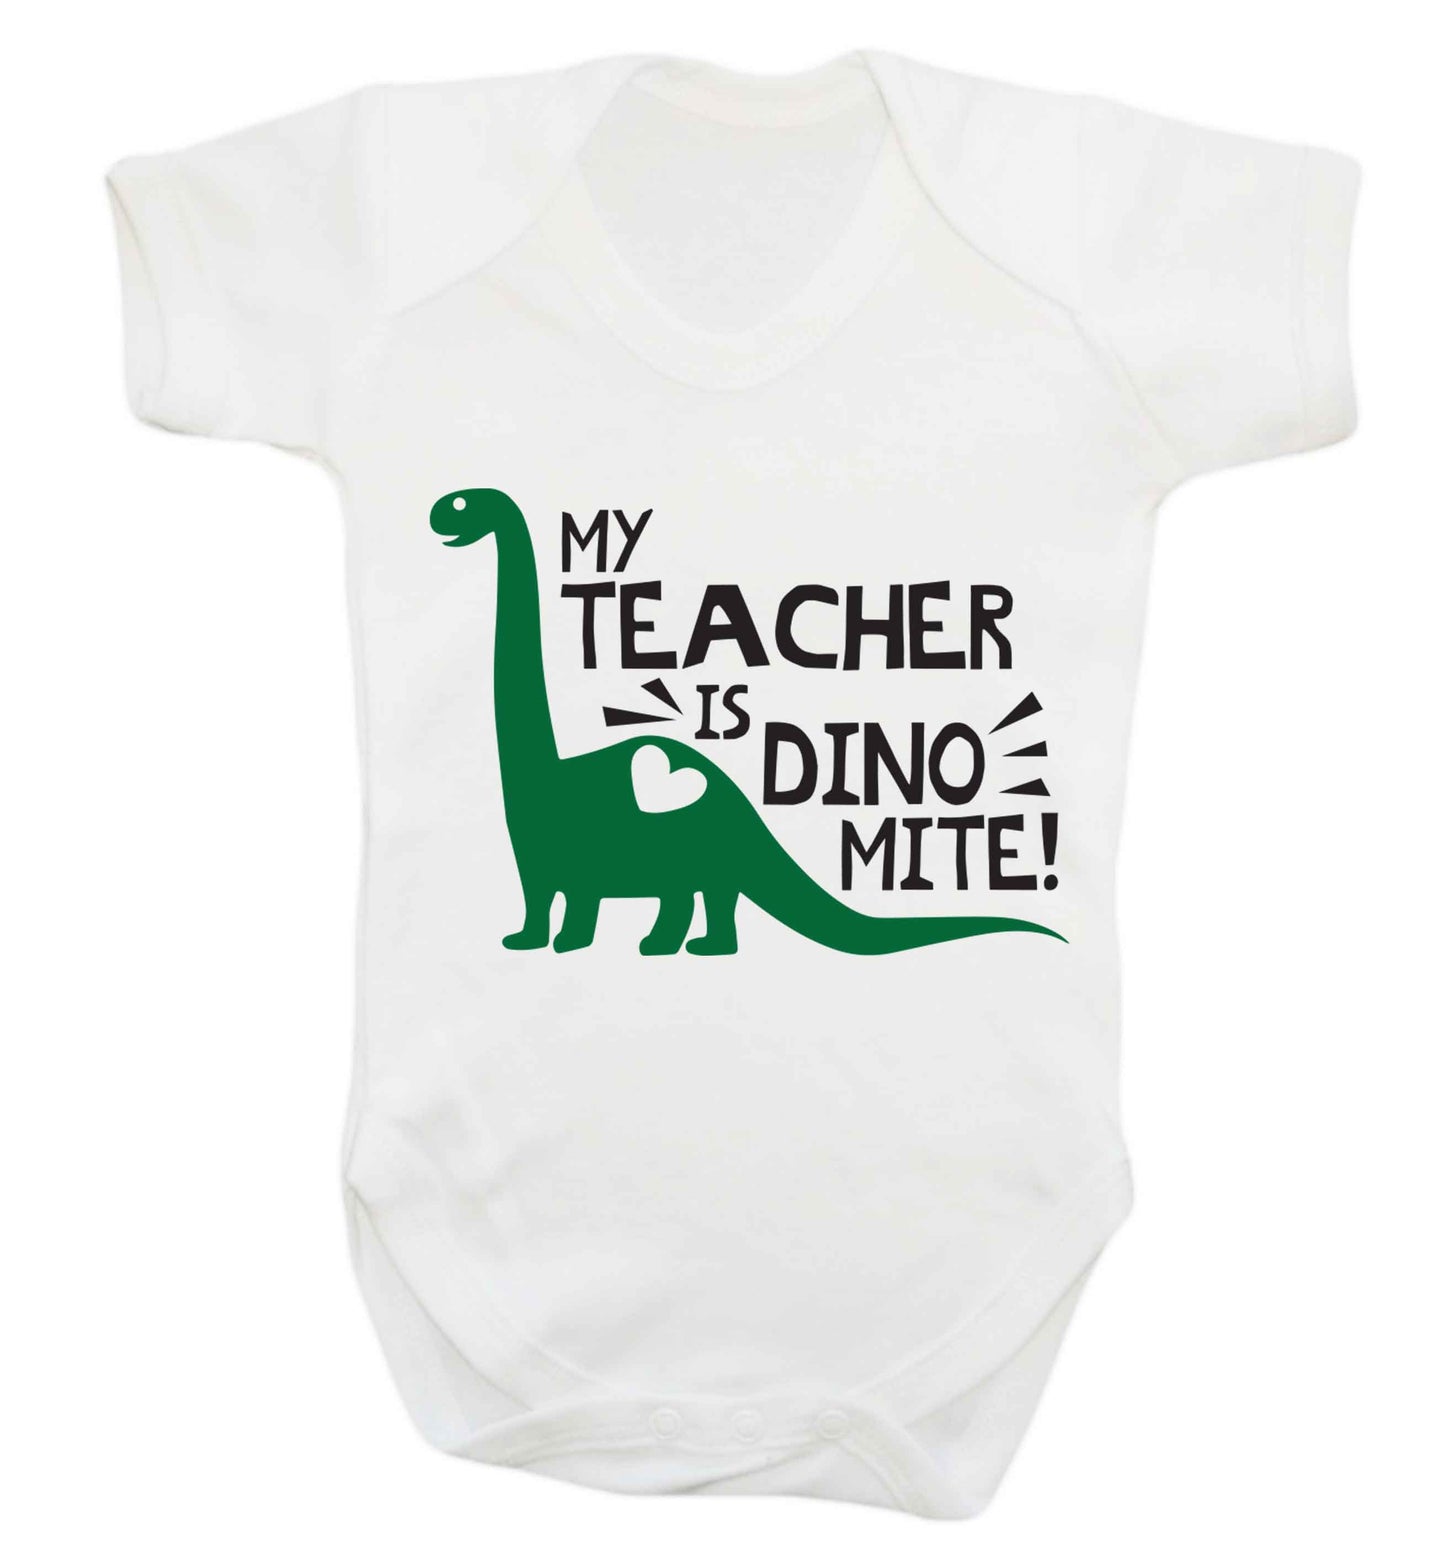 My teacher is dinomite! Baby Vest white 18-24 months